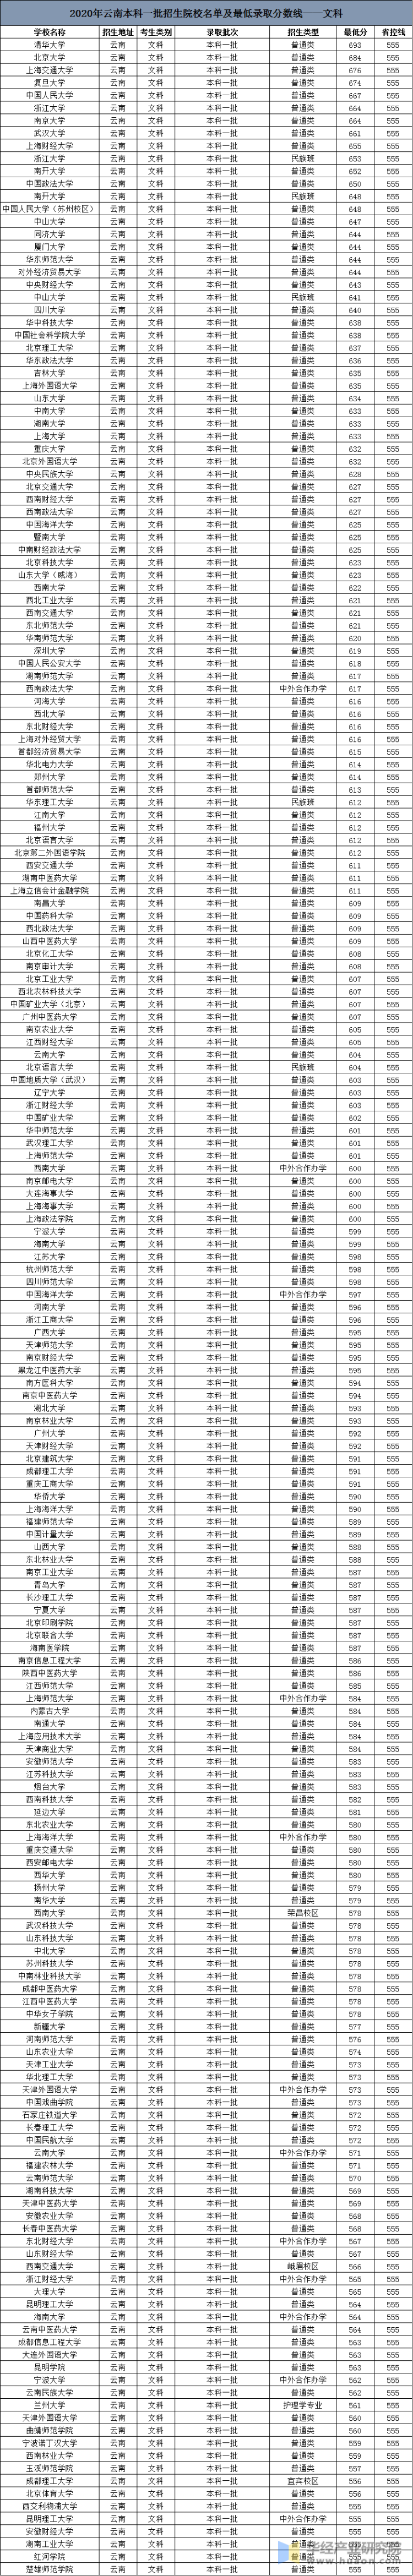 2020年云南高考本科一批招生院校名单及最低录取分数线——文科